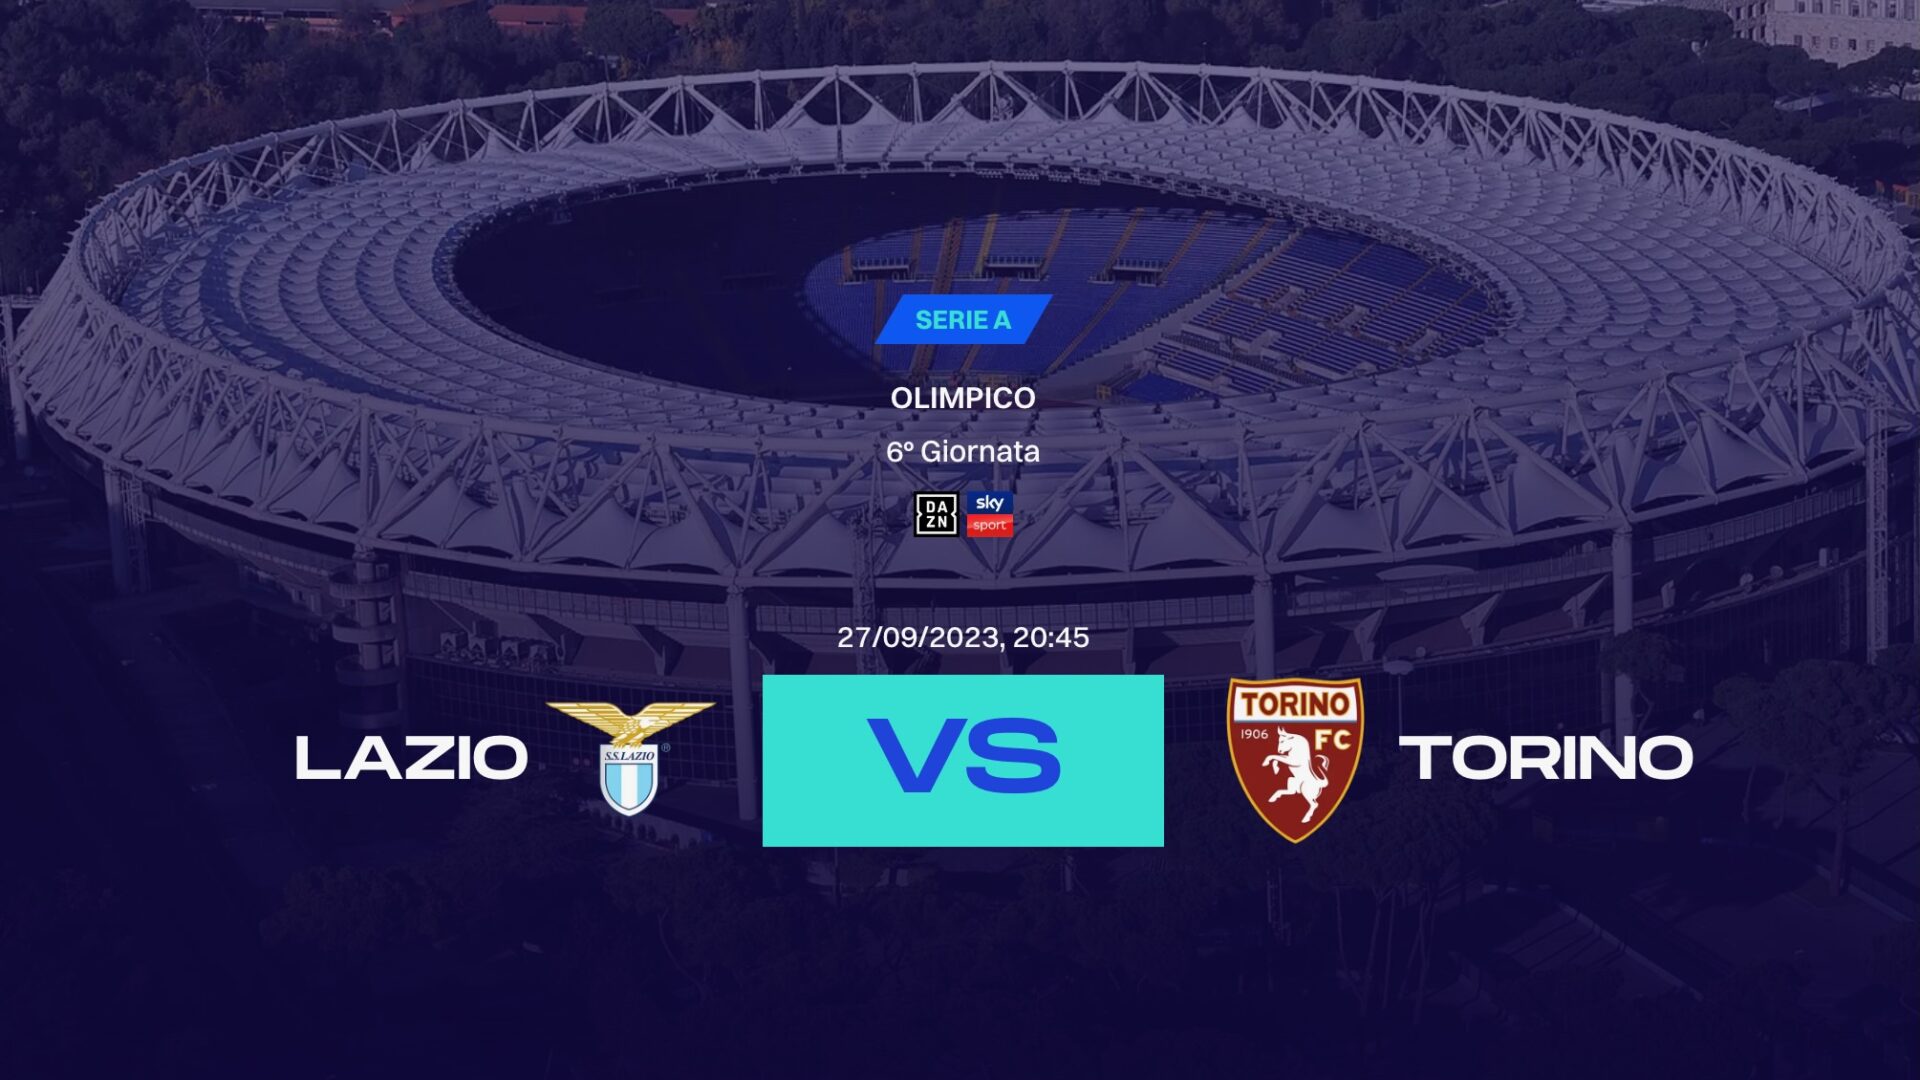 Serie A Tim 2023/2024: dove vedere Società Sportiva Lazio-Torino Football Club in diretta in TV e streaming, Sky, Dazn, probabili formazioni